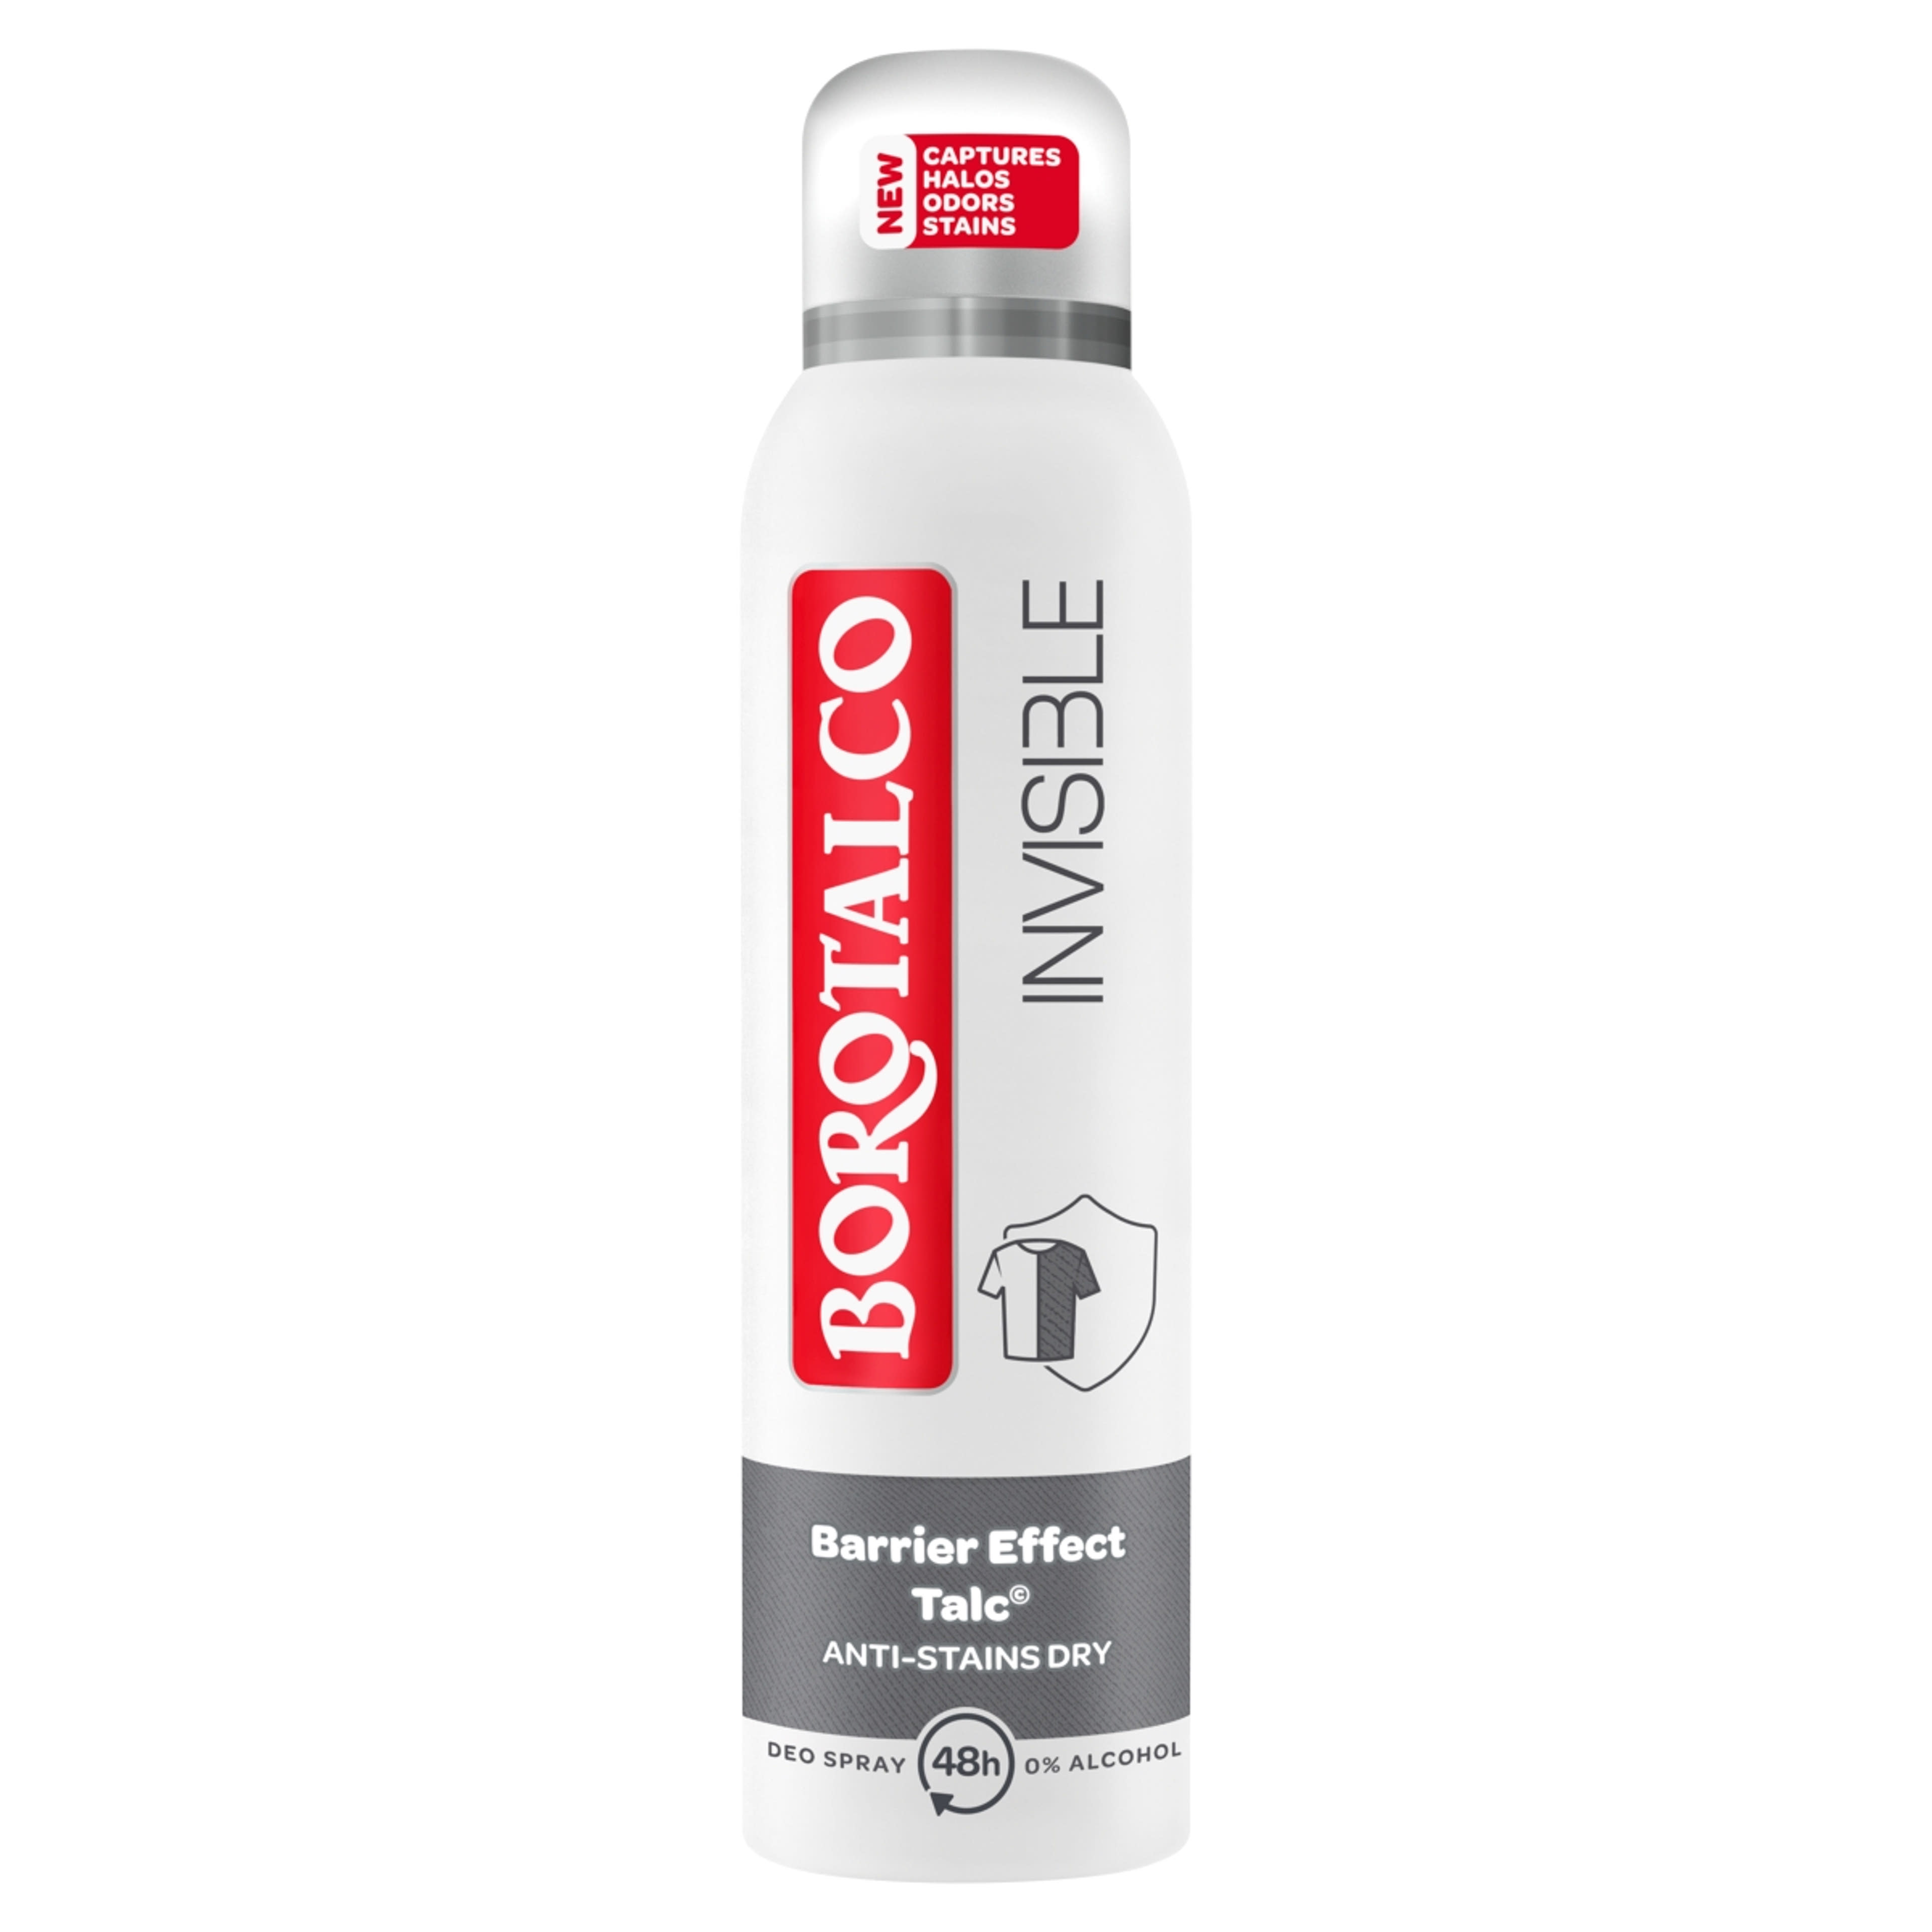 Borotalco Invisible dezodor - 150 ml-1